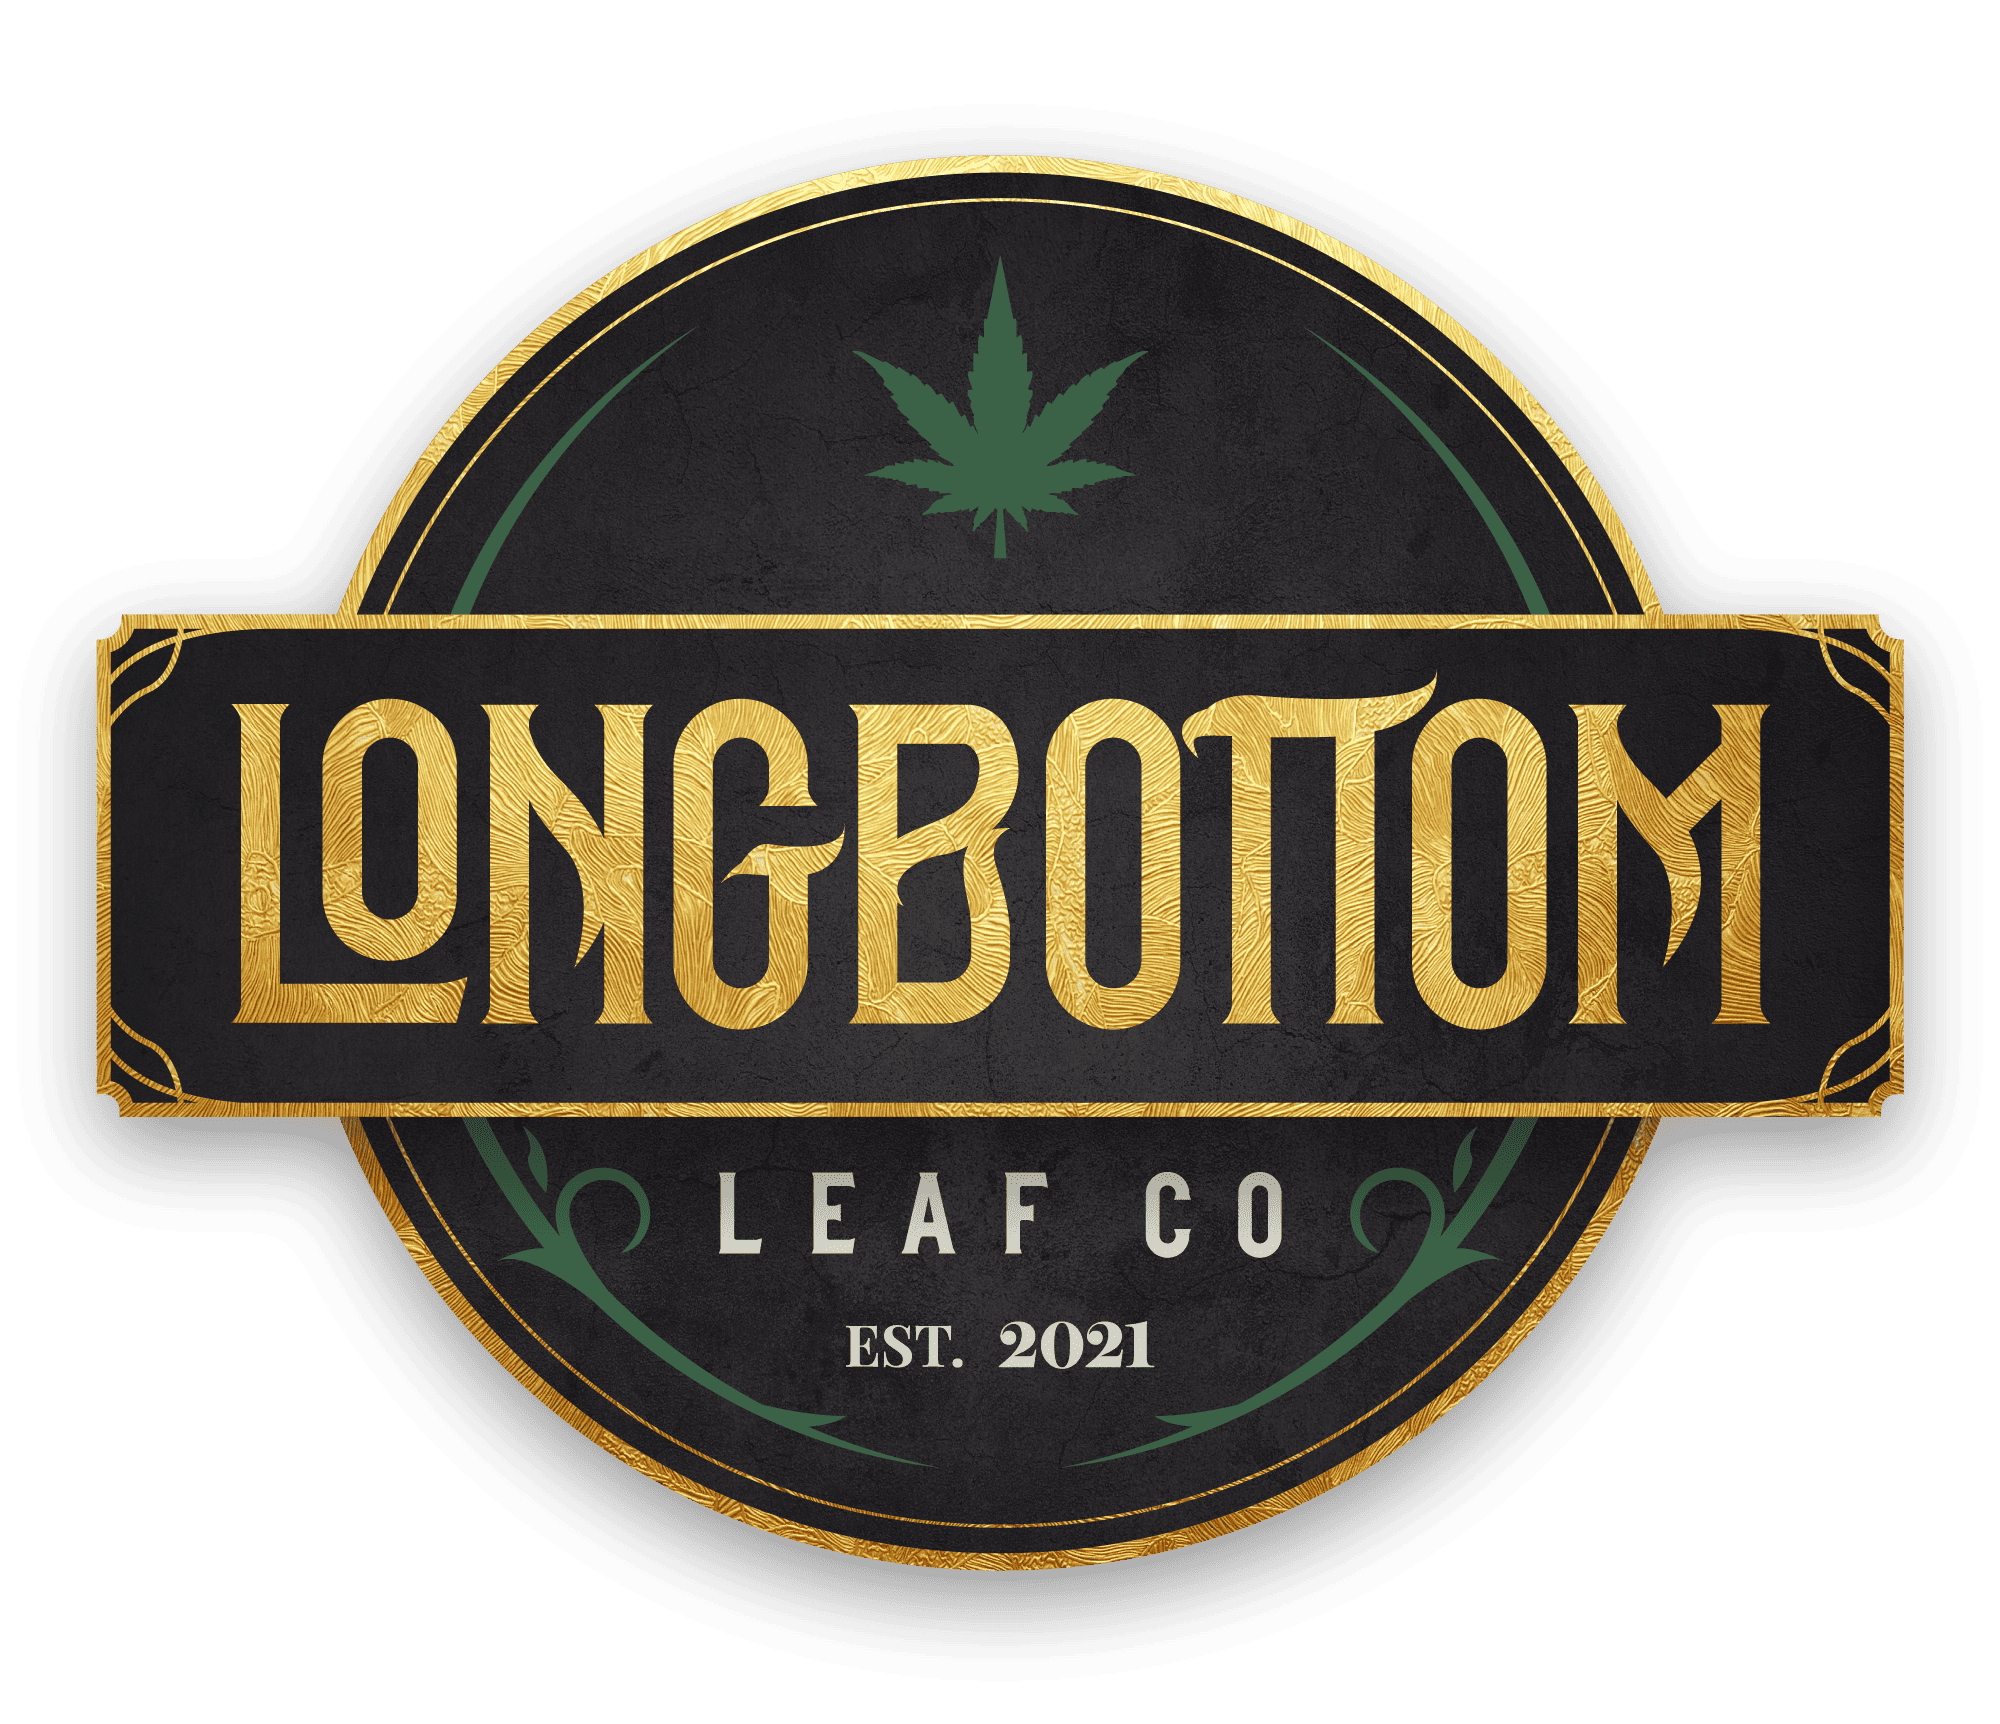 Longbottom Leaf